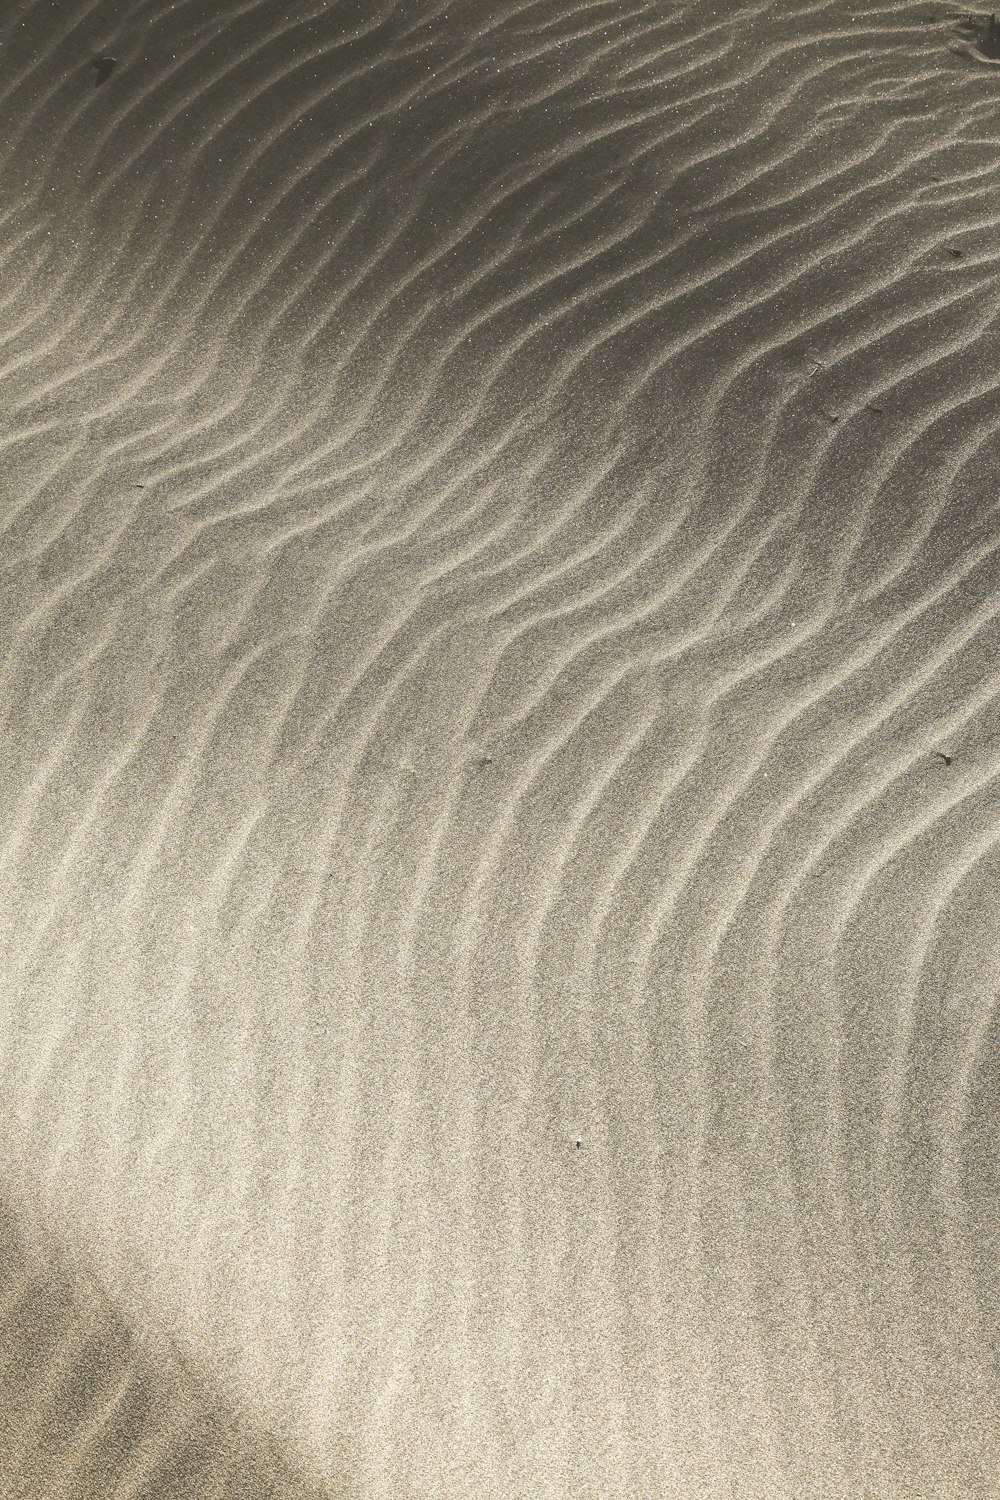 uma duna de areia com um pequeno pássaro em cima dela